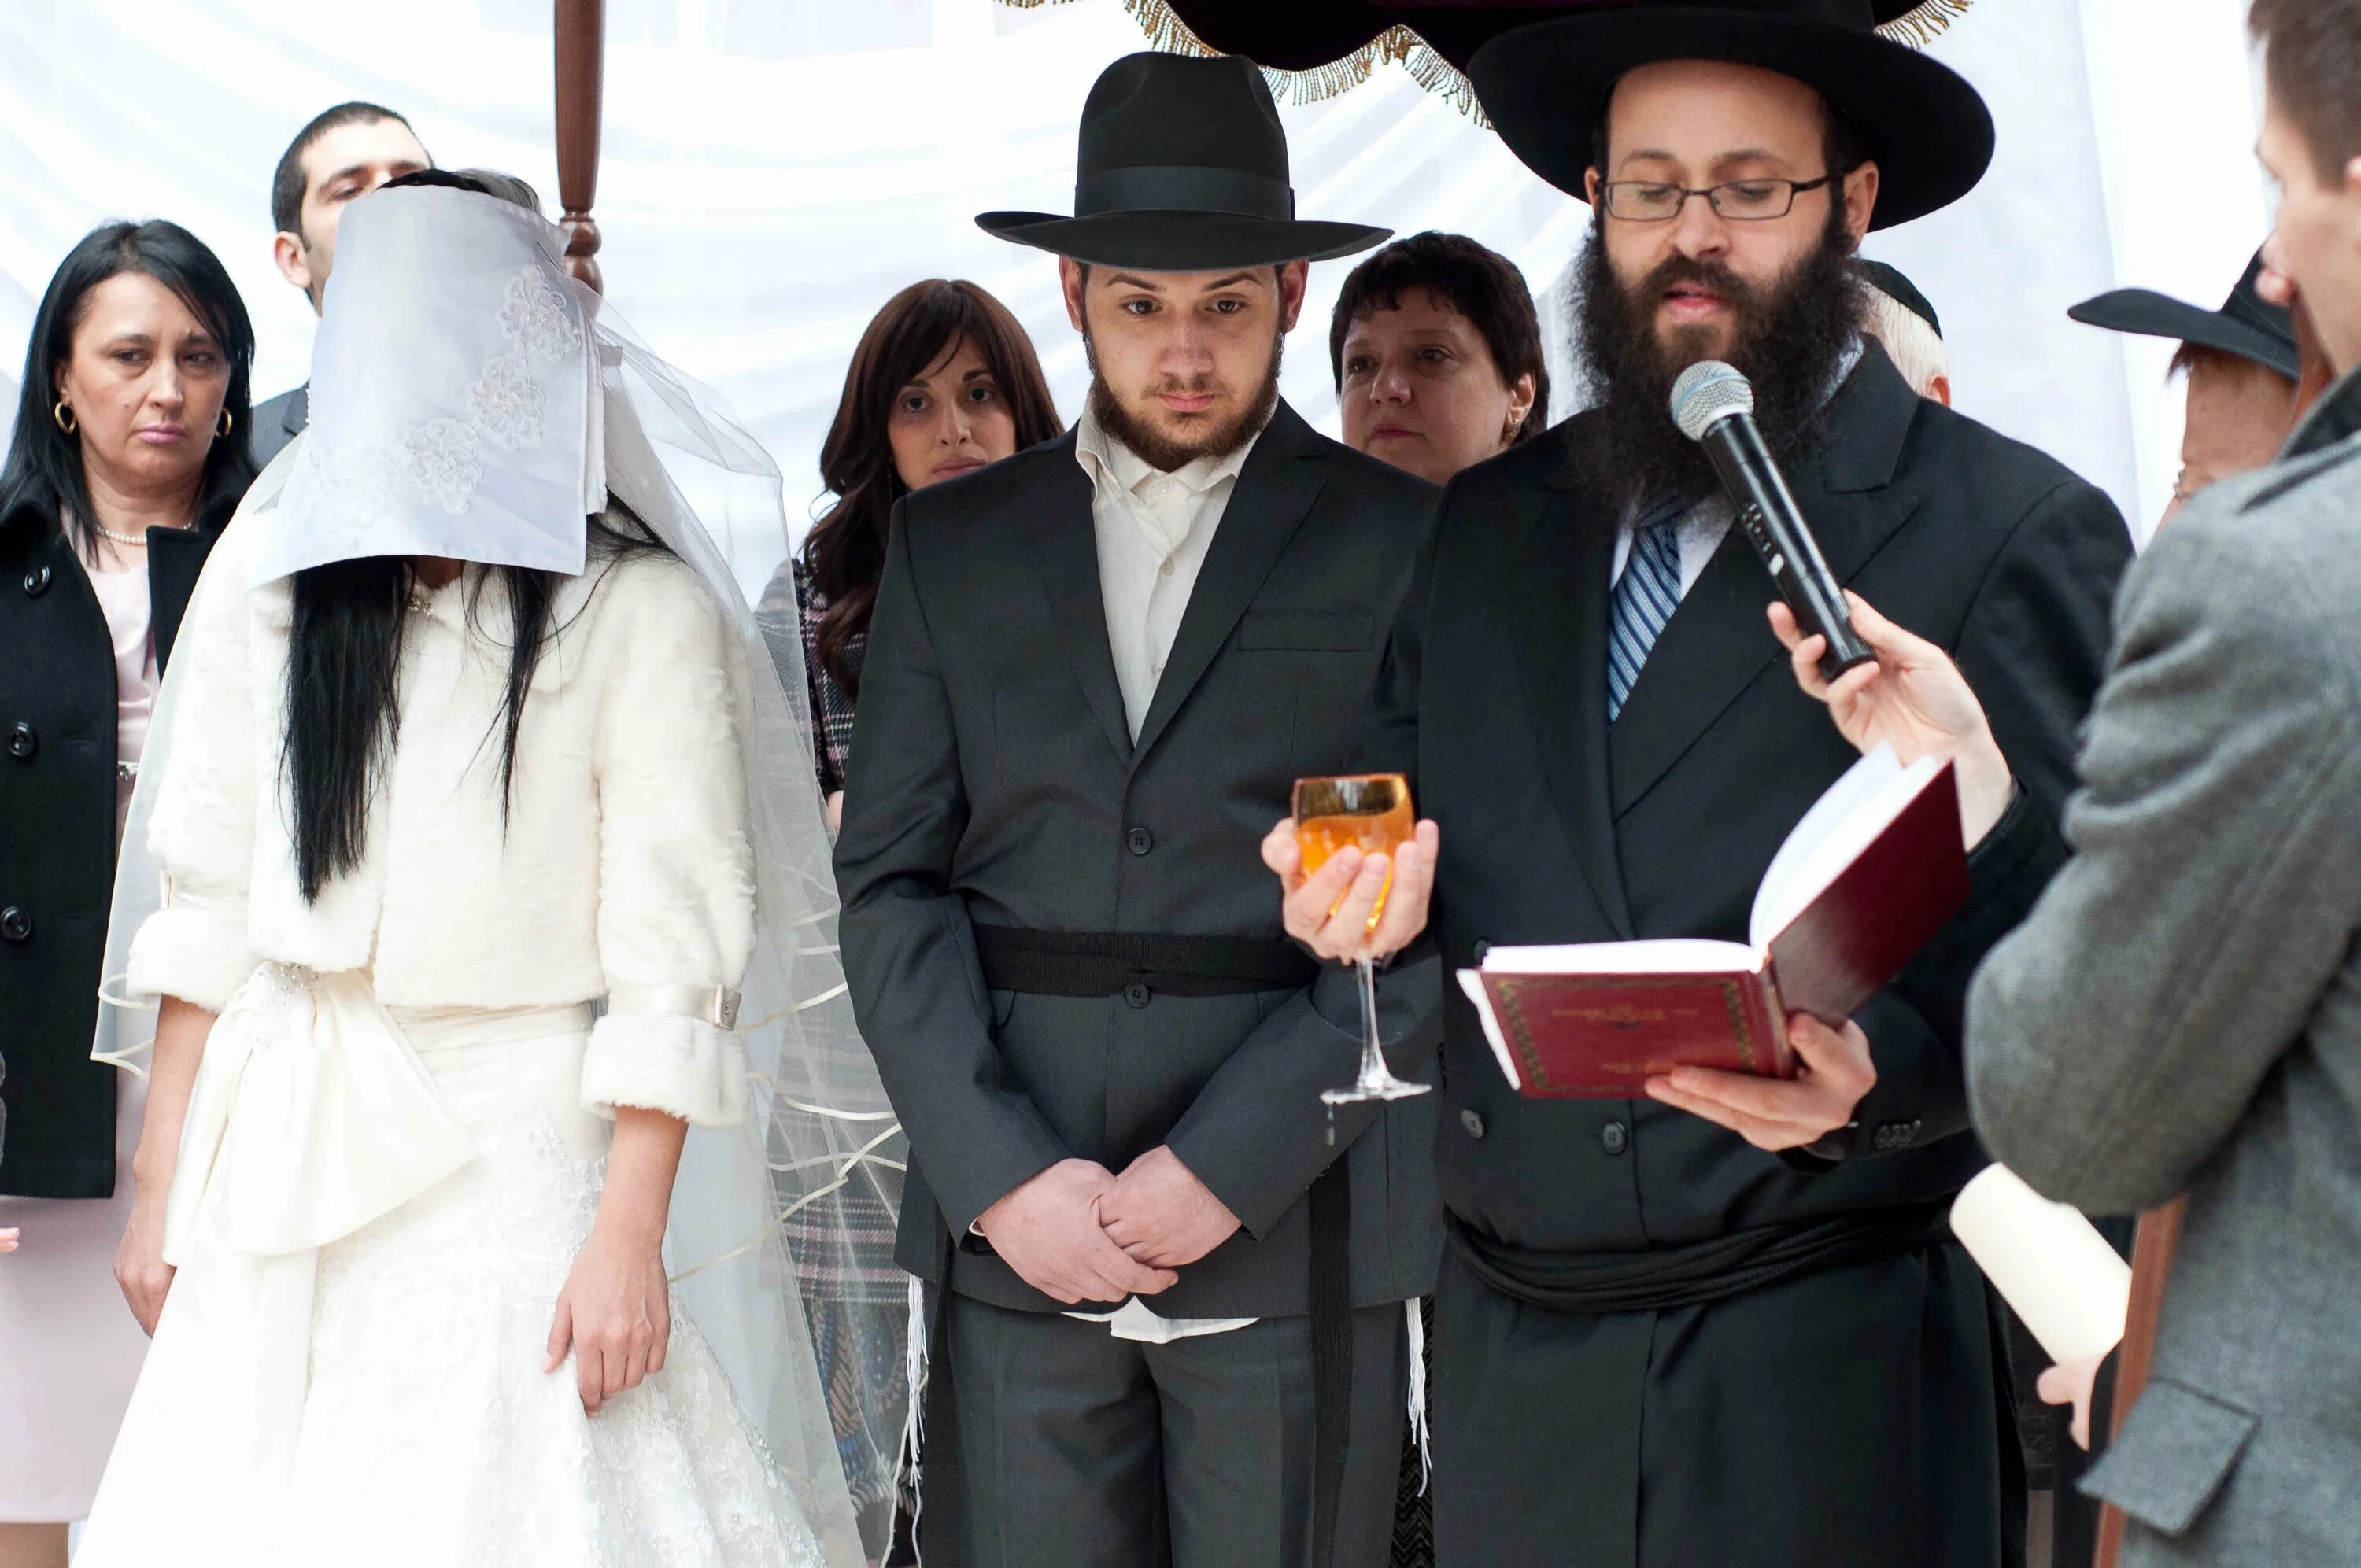 Ортодоксальная Еврейская свадьба. Еврейская свадьба под хупой. Одежда ортодоксов в Израиле. Воскресенье у евреев